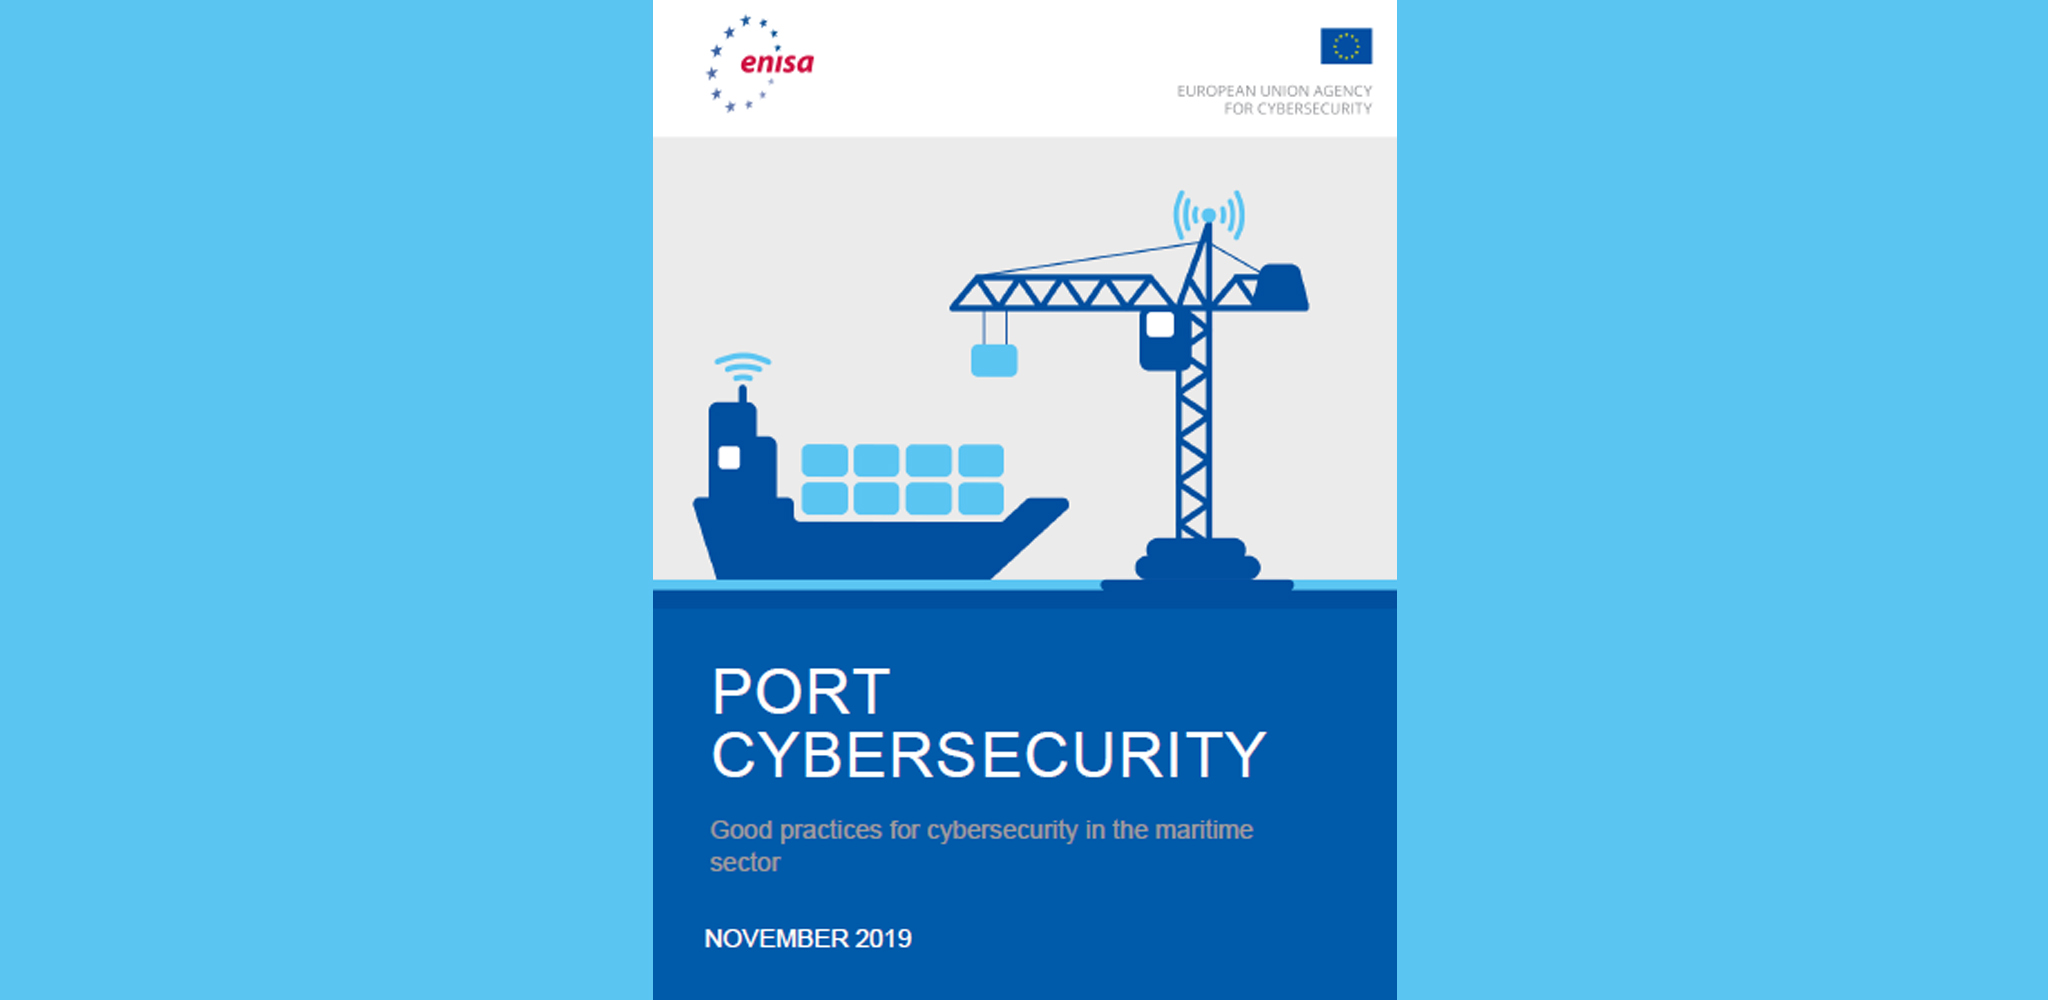 Preocupação com a Segurança Cibernética Marítima e Portuária